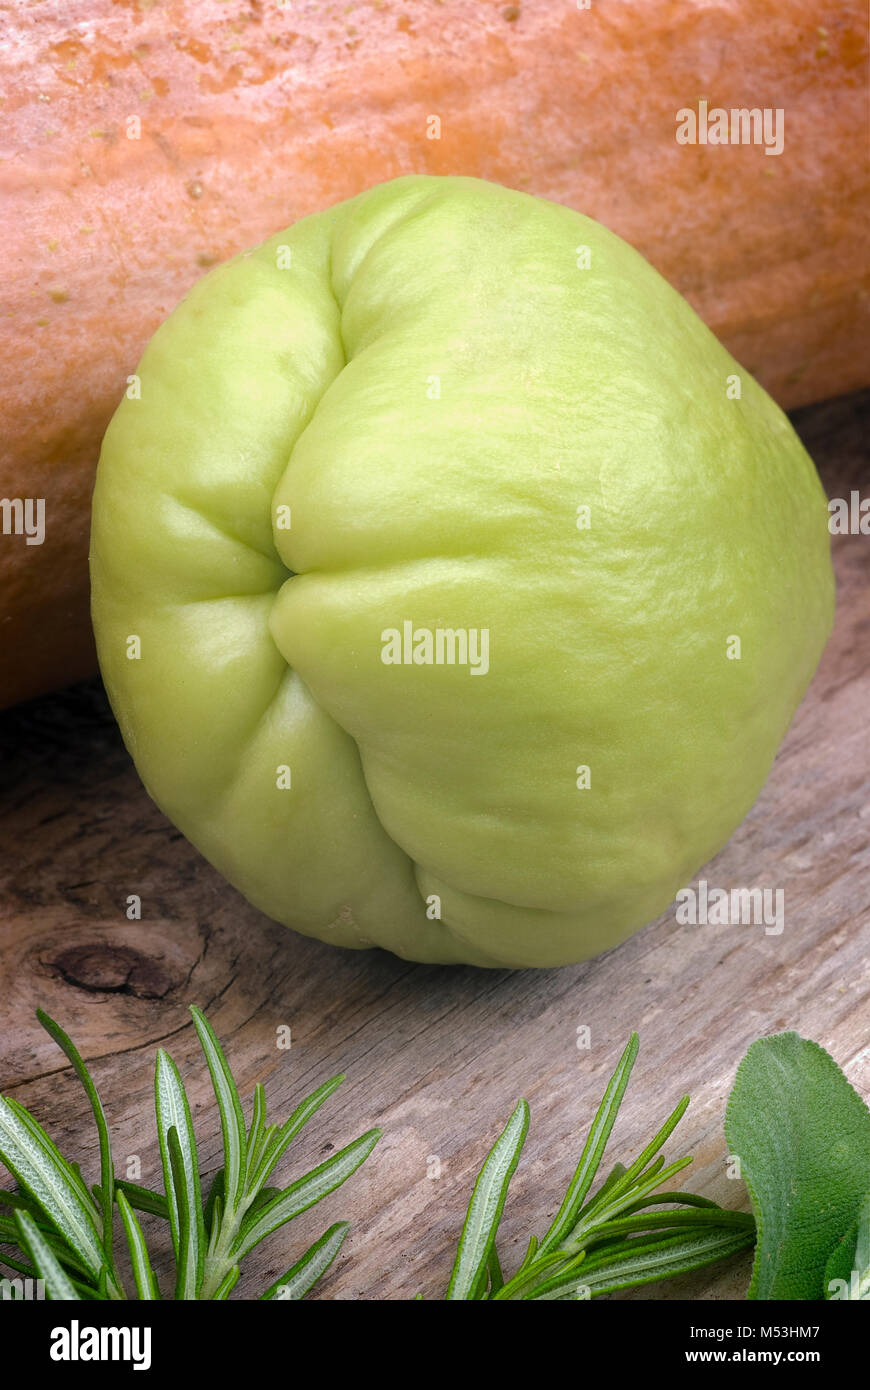 Die chayote (Sechium edule) ist ein Gemüse aus Südamerika Stockfotografie -  Alamy